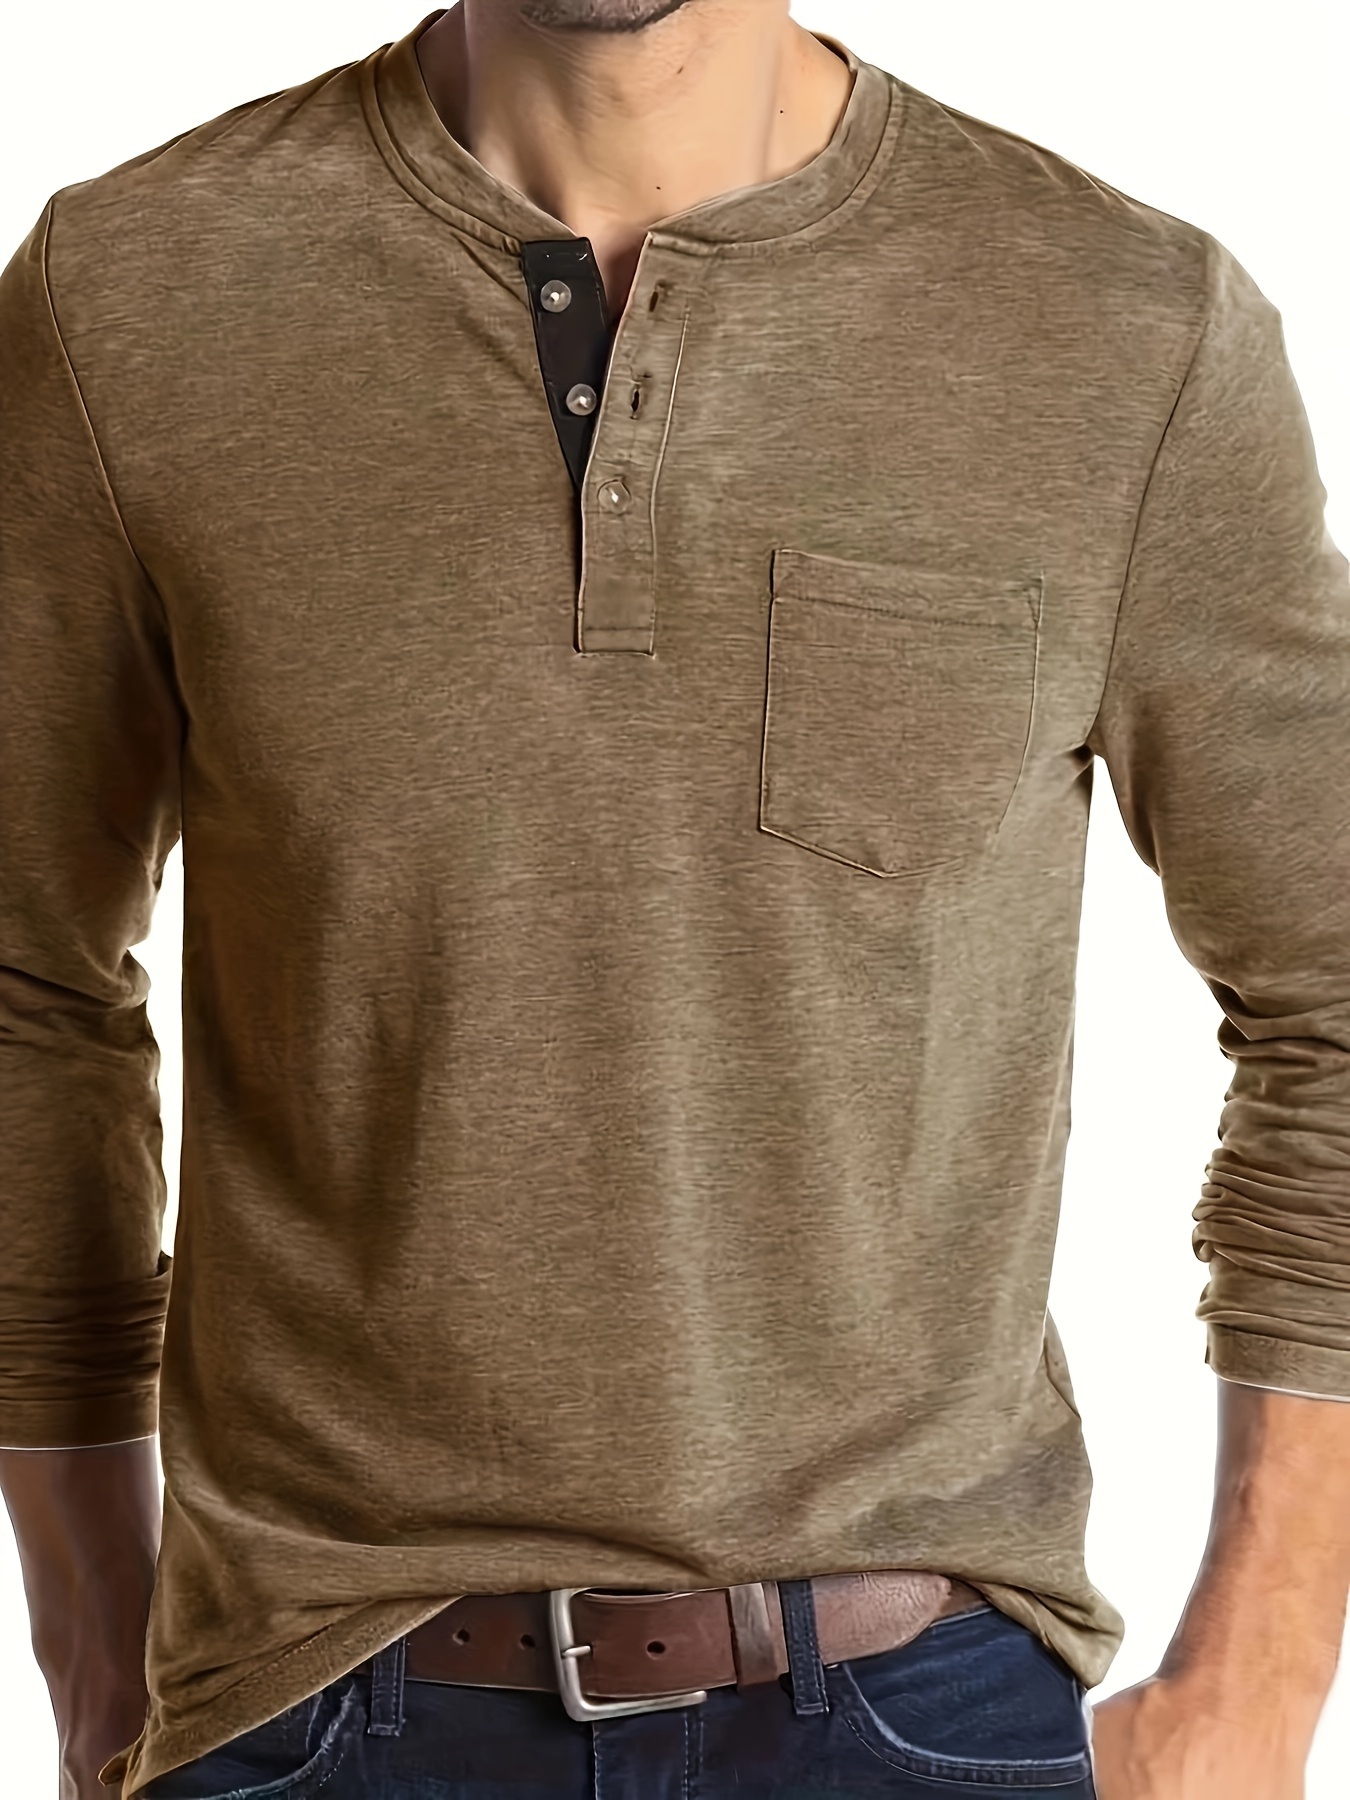 Angeun Men's Linen Casual T-Shirts 34 Sleeve Henley India